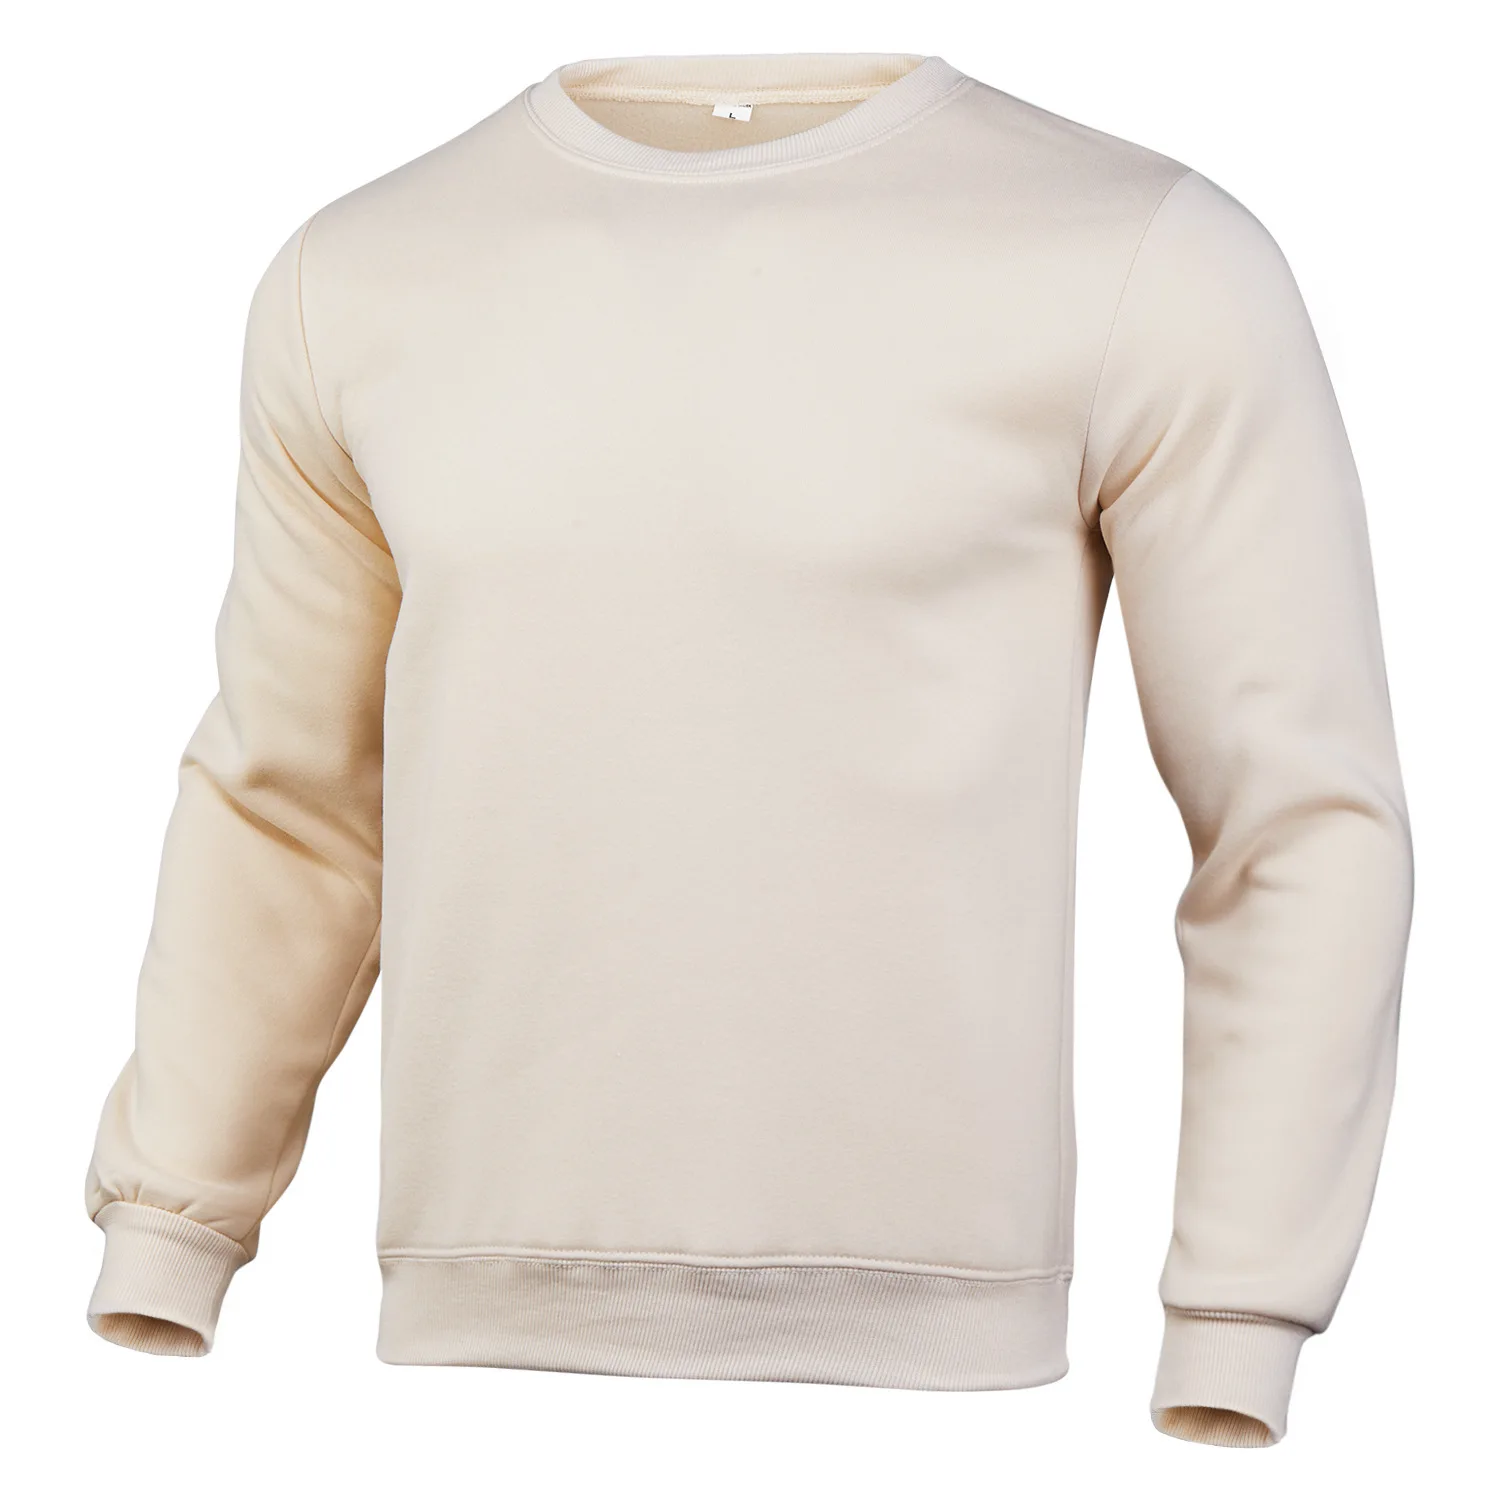 
Оптовая торговля полиэстер пустой пользовательский пуловер Crewneck простые толстовки для мужчин 